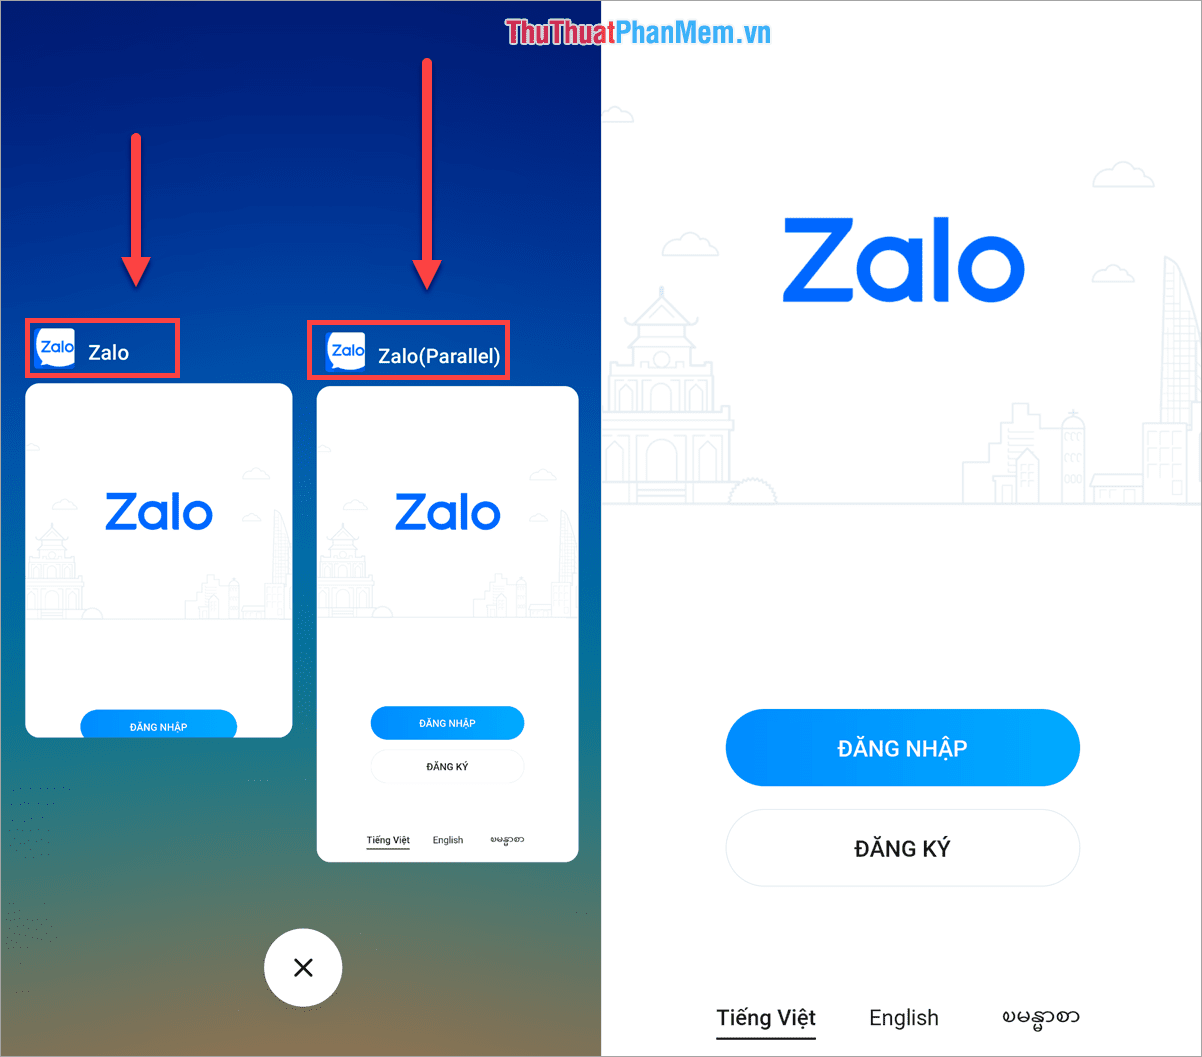 Kết quả là chúng ta có hai ứng dụng Zalo trên điện thoại sử dụng hai tài khoản khác nhau